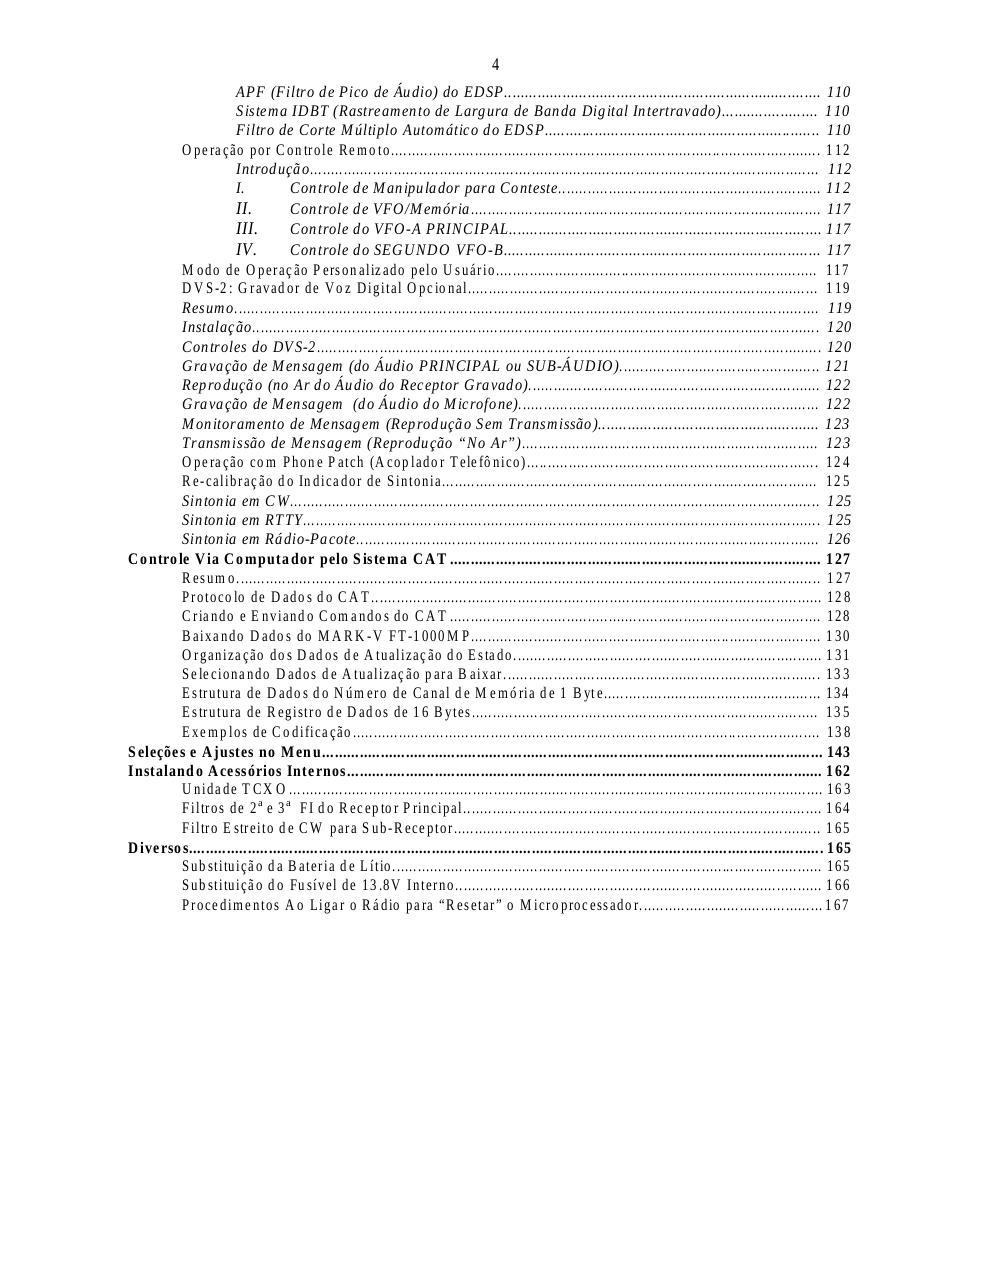 mark-vft1000mp-brasil-.pdf - page 4/168